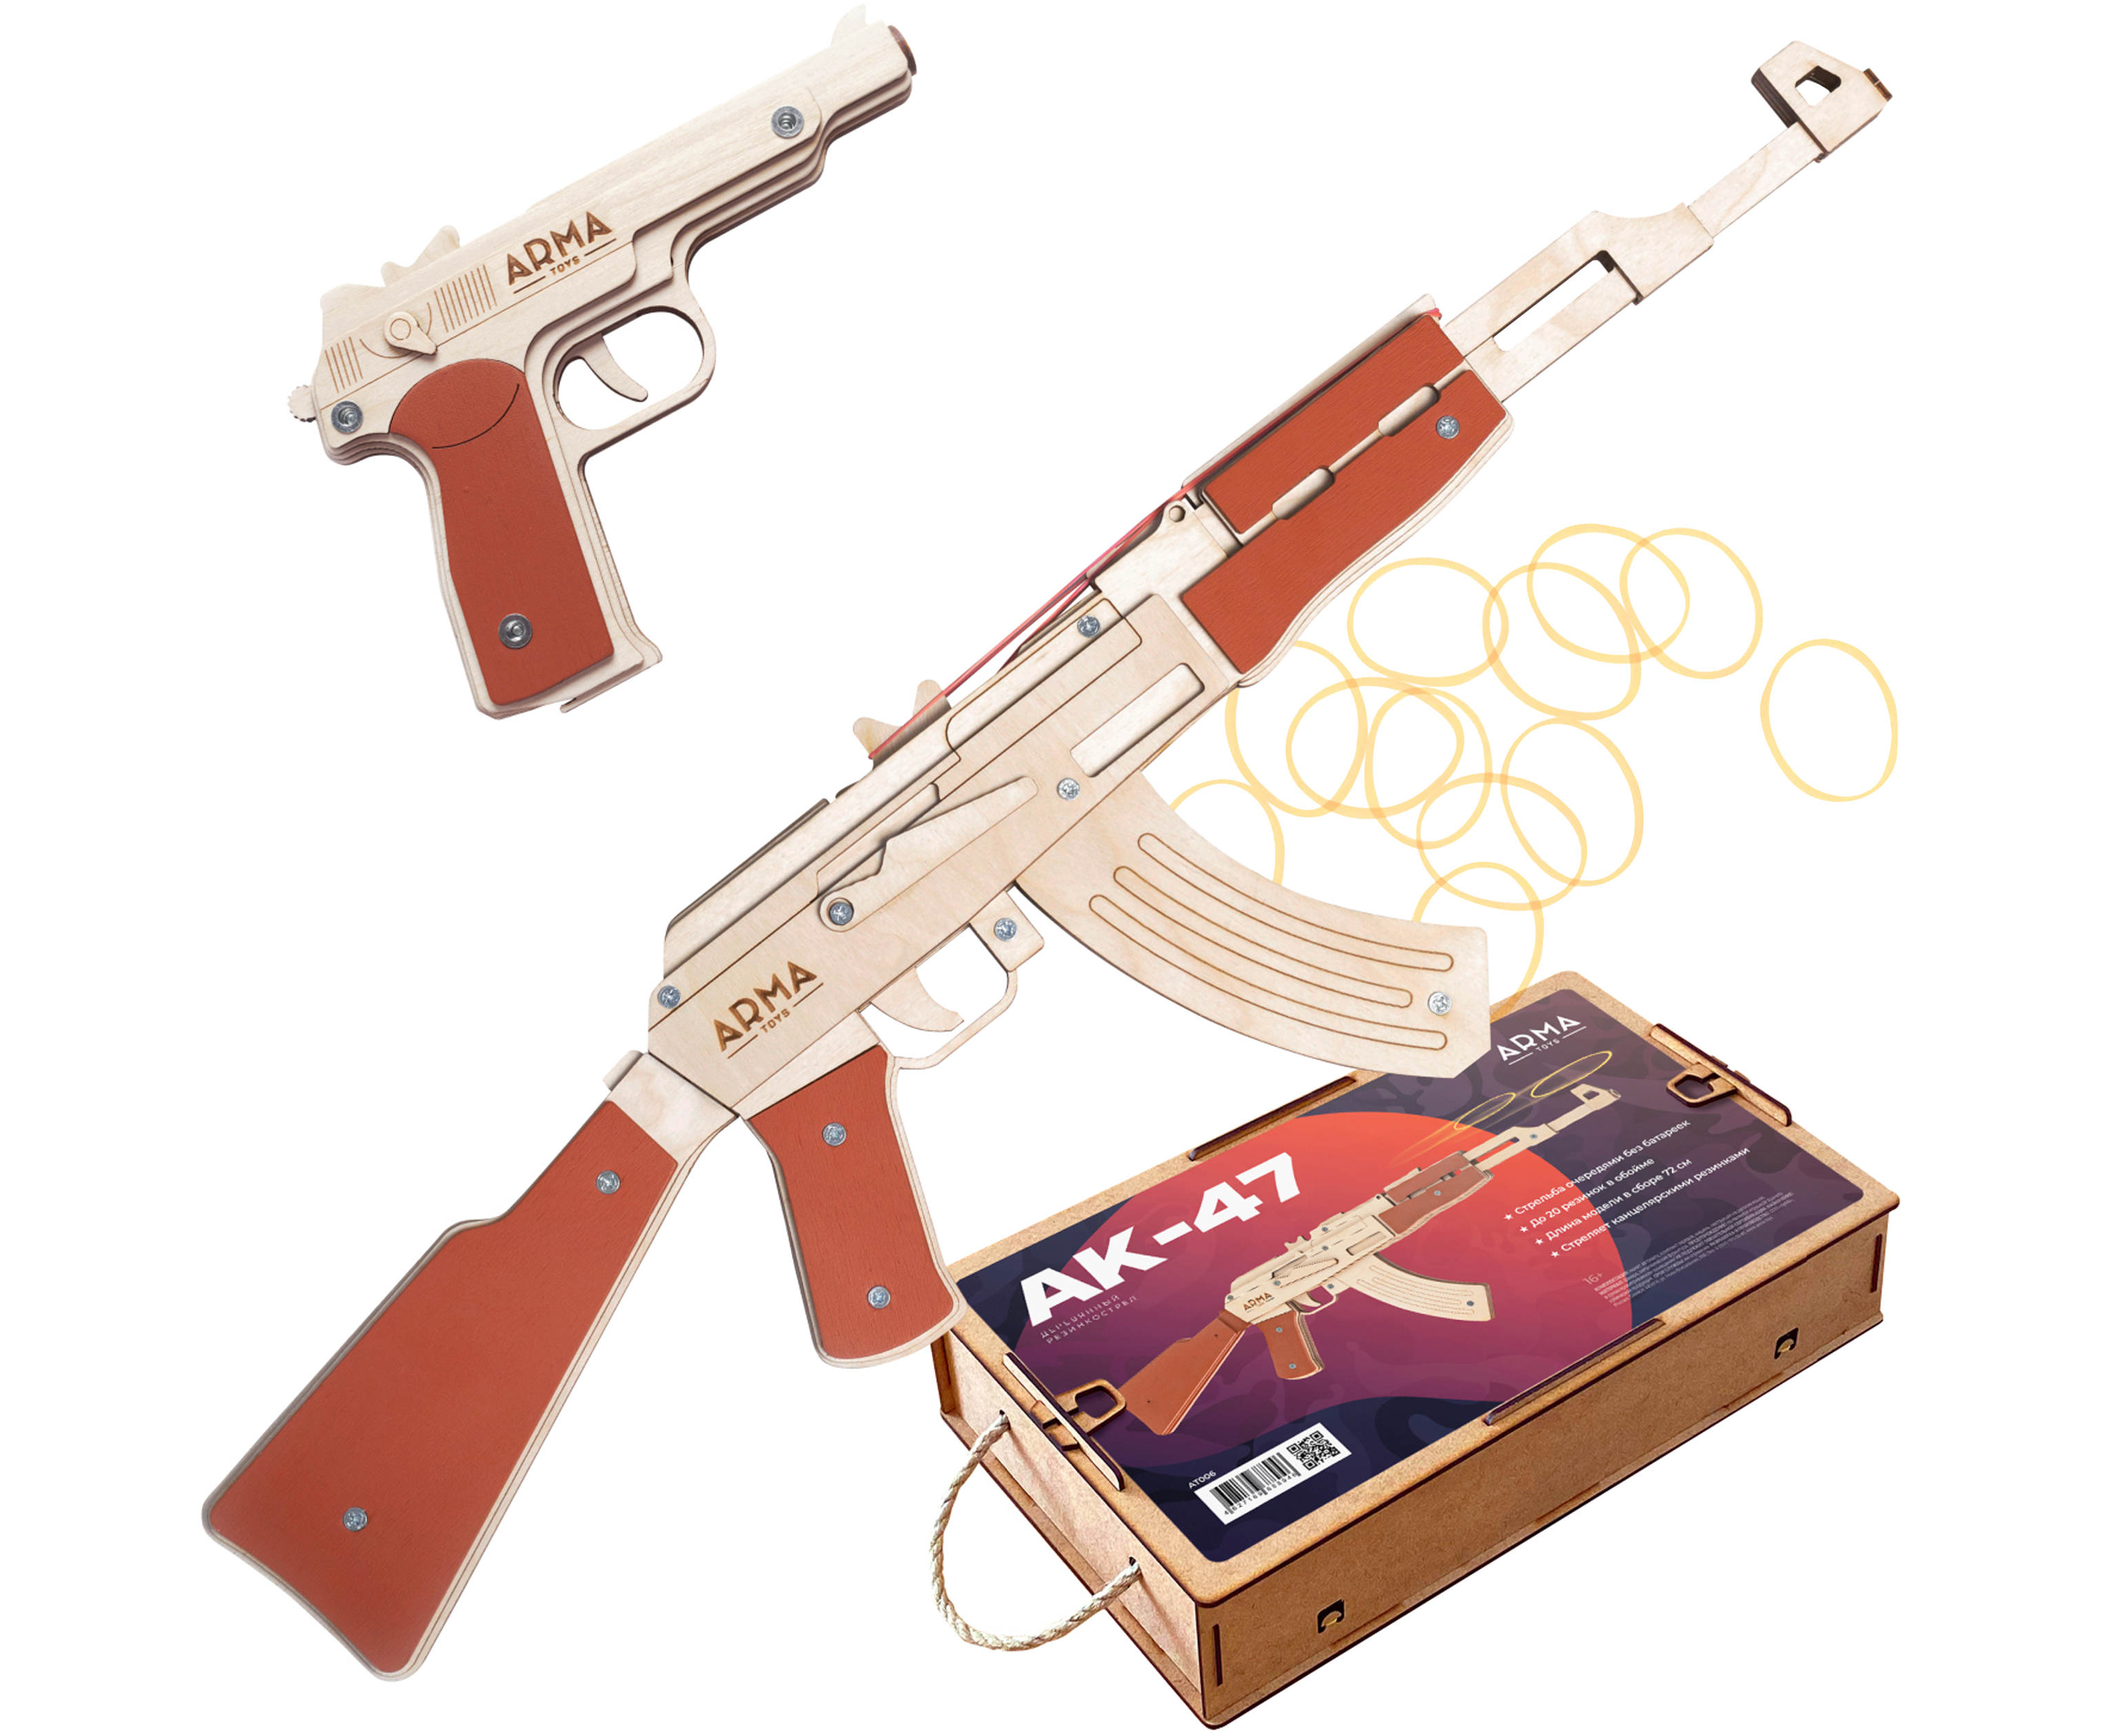 Набор игрушечных резинкострелов Arma toys Военный специалист 1 набор игрушечных резинкострелов arma toys спецназ фбр 2 винтовка m4 пистолет глок at510